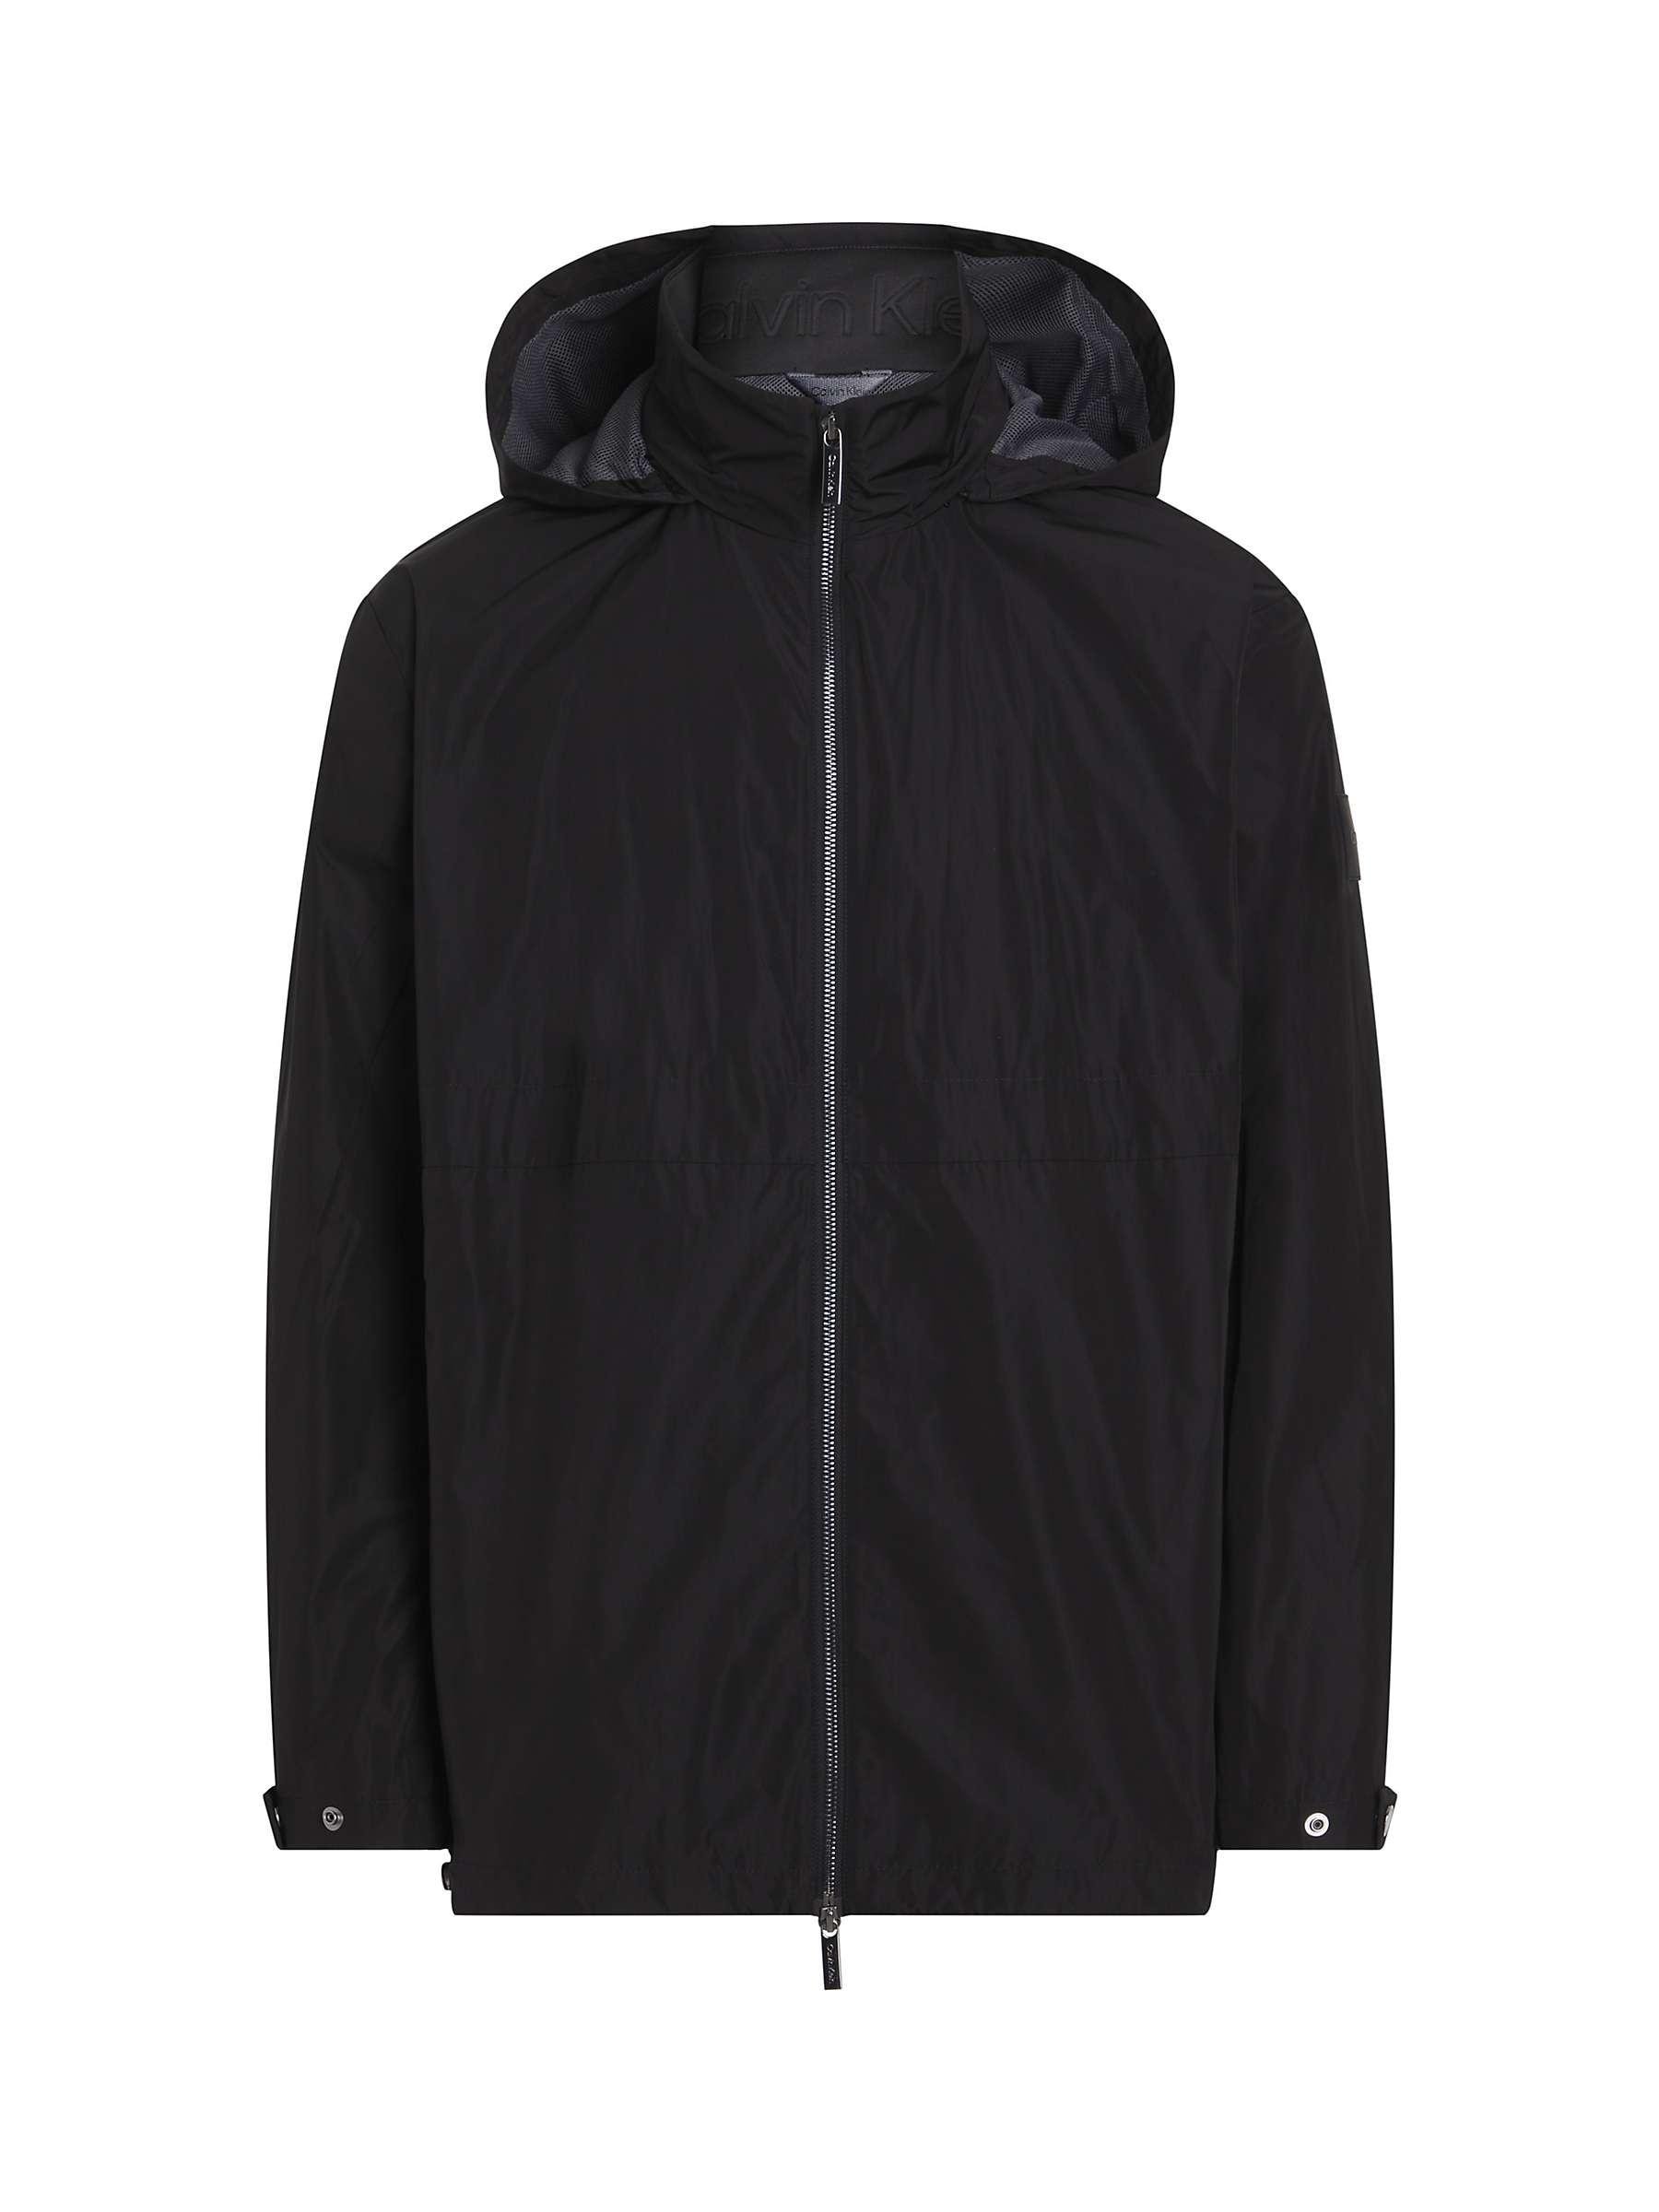 Buy Calvin Klein Modern Hooded Windbreaker Jacket, Ck Black Online at johnlewis.com